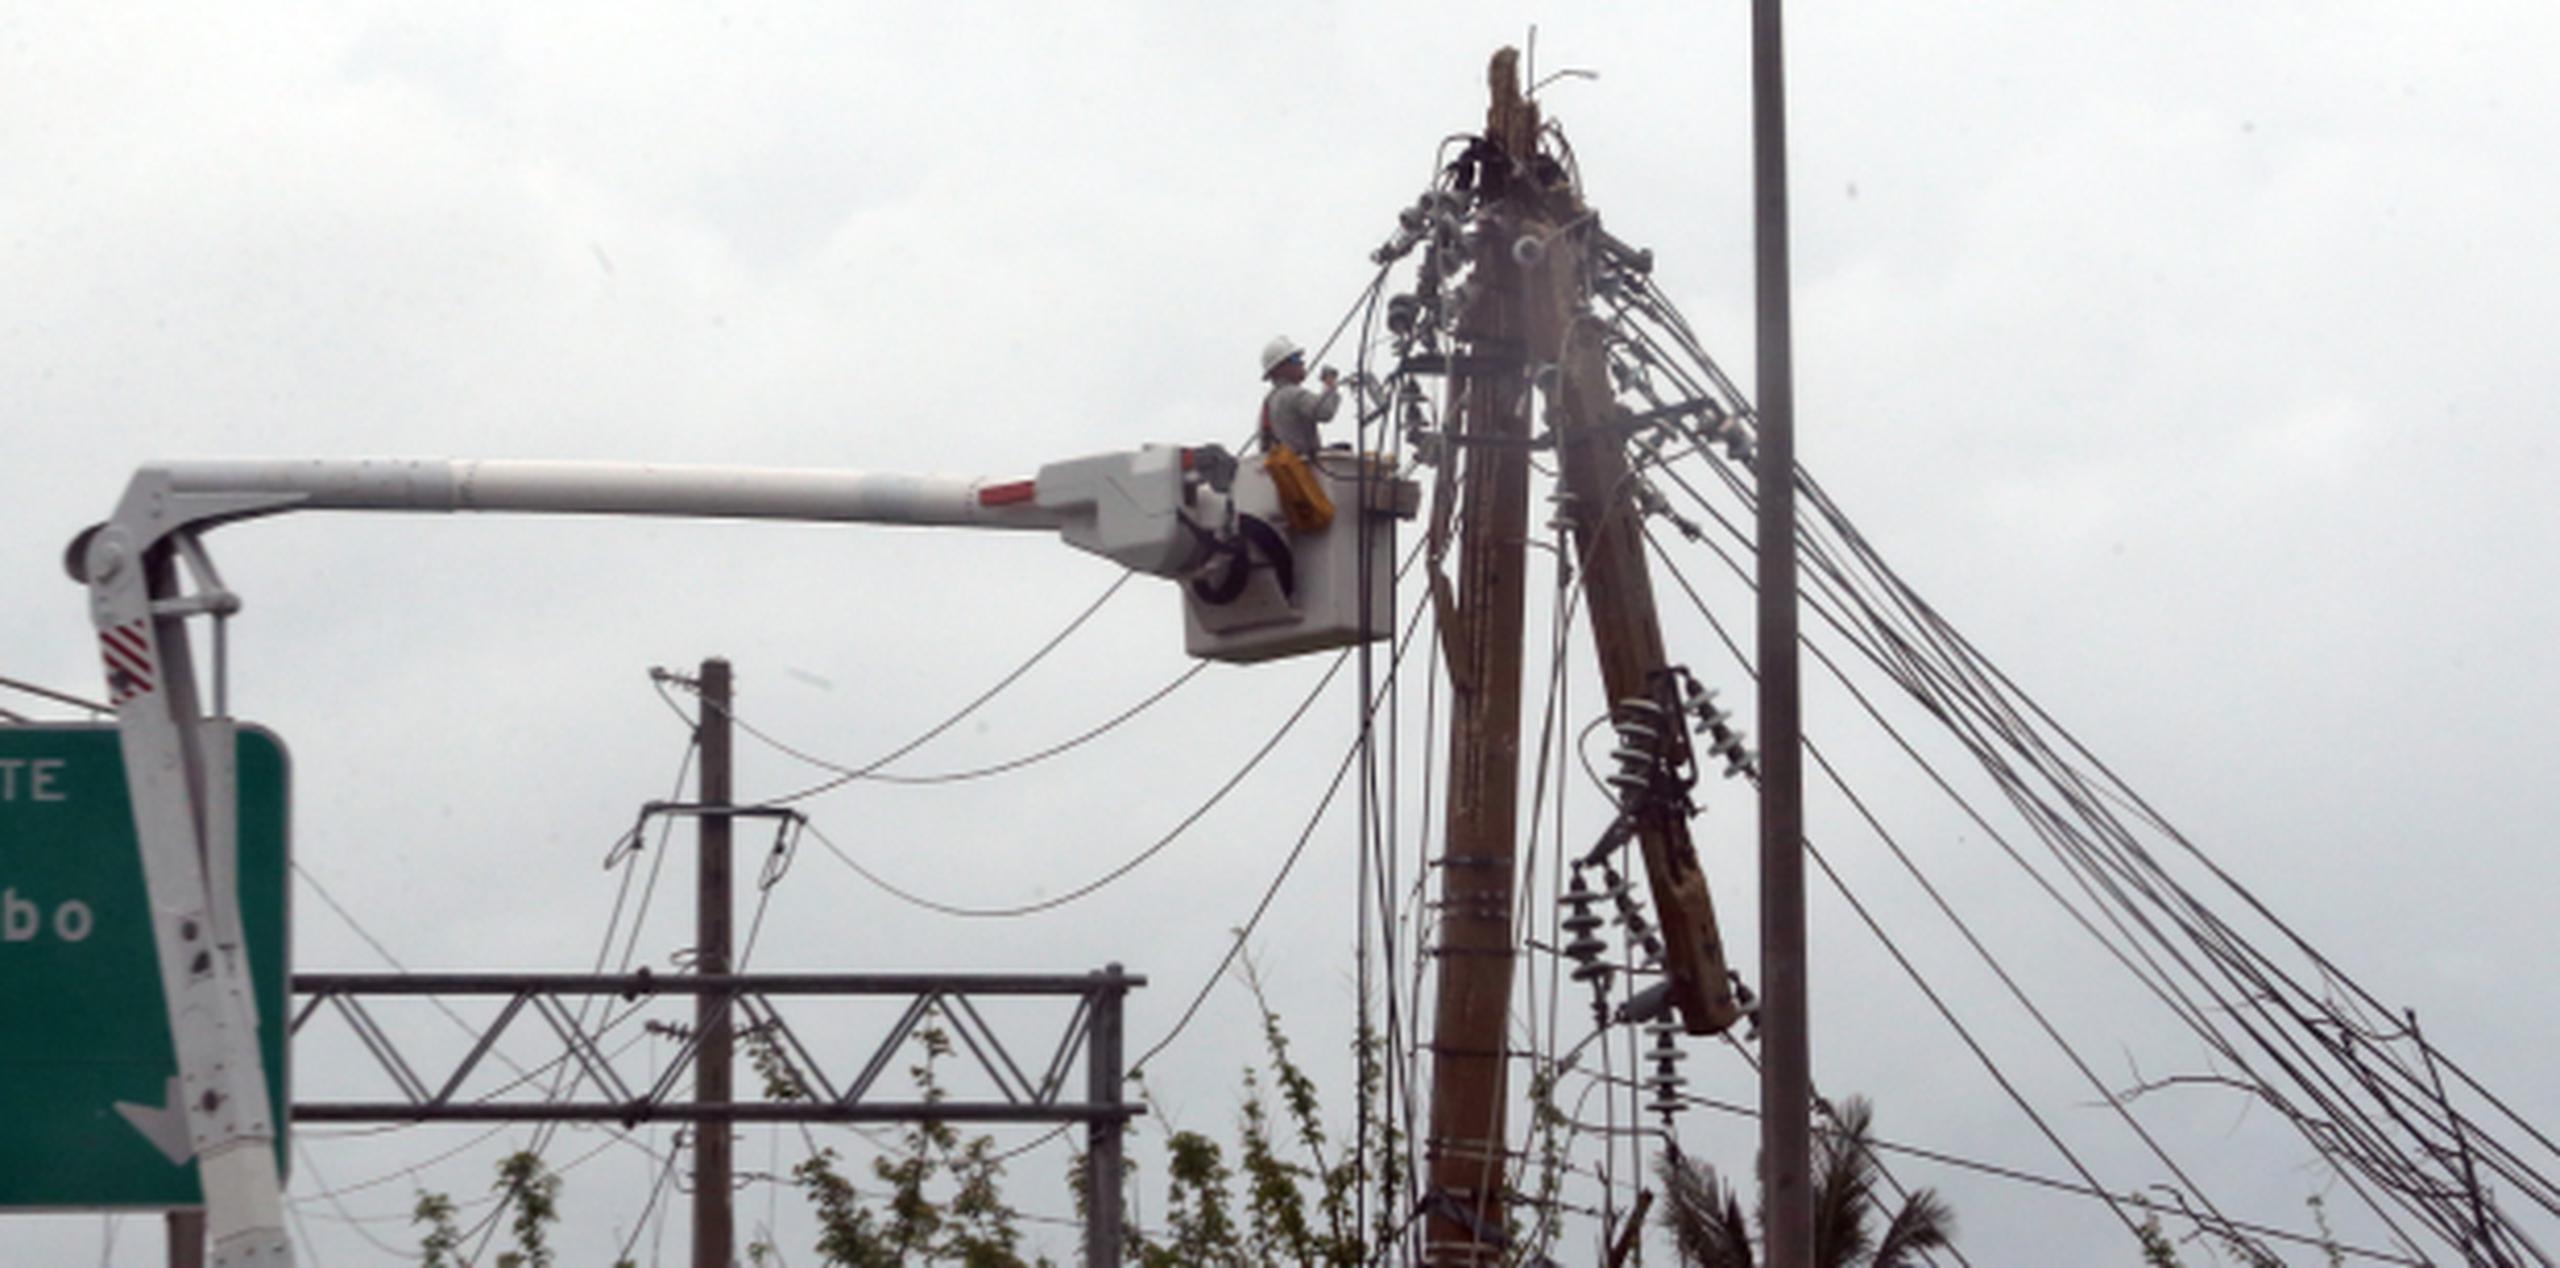 El servicio de electricidad en Puerto Rico colapsó completamente por el paso del huracán María el pasado 20 de septiembre. (Archivo)